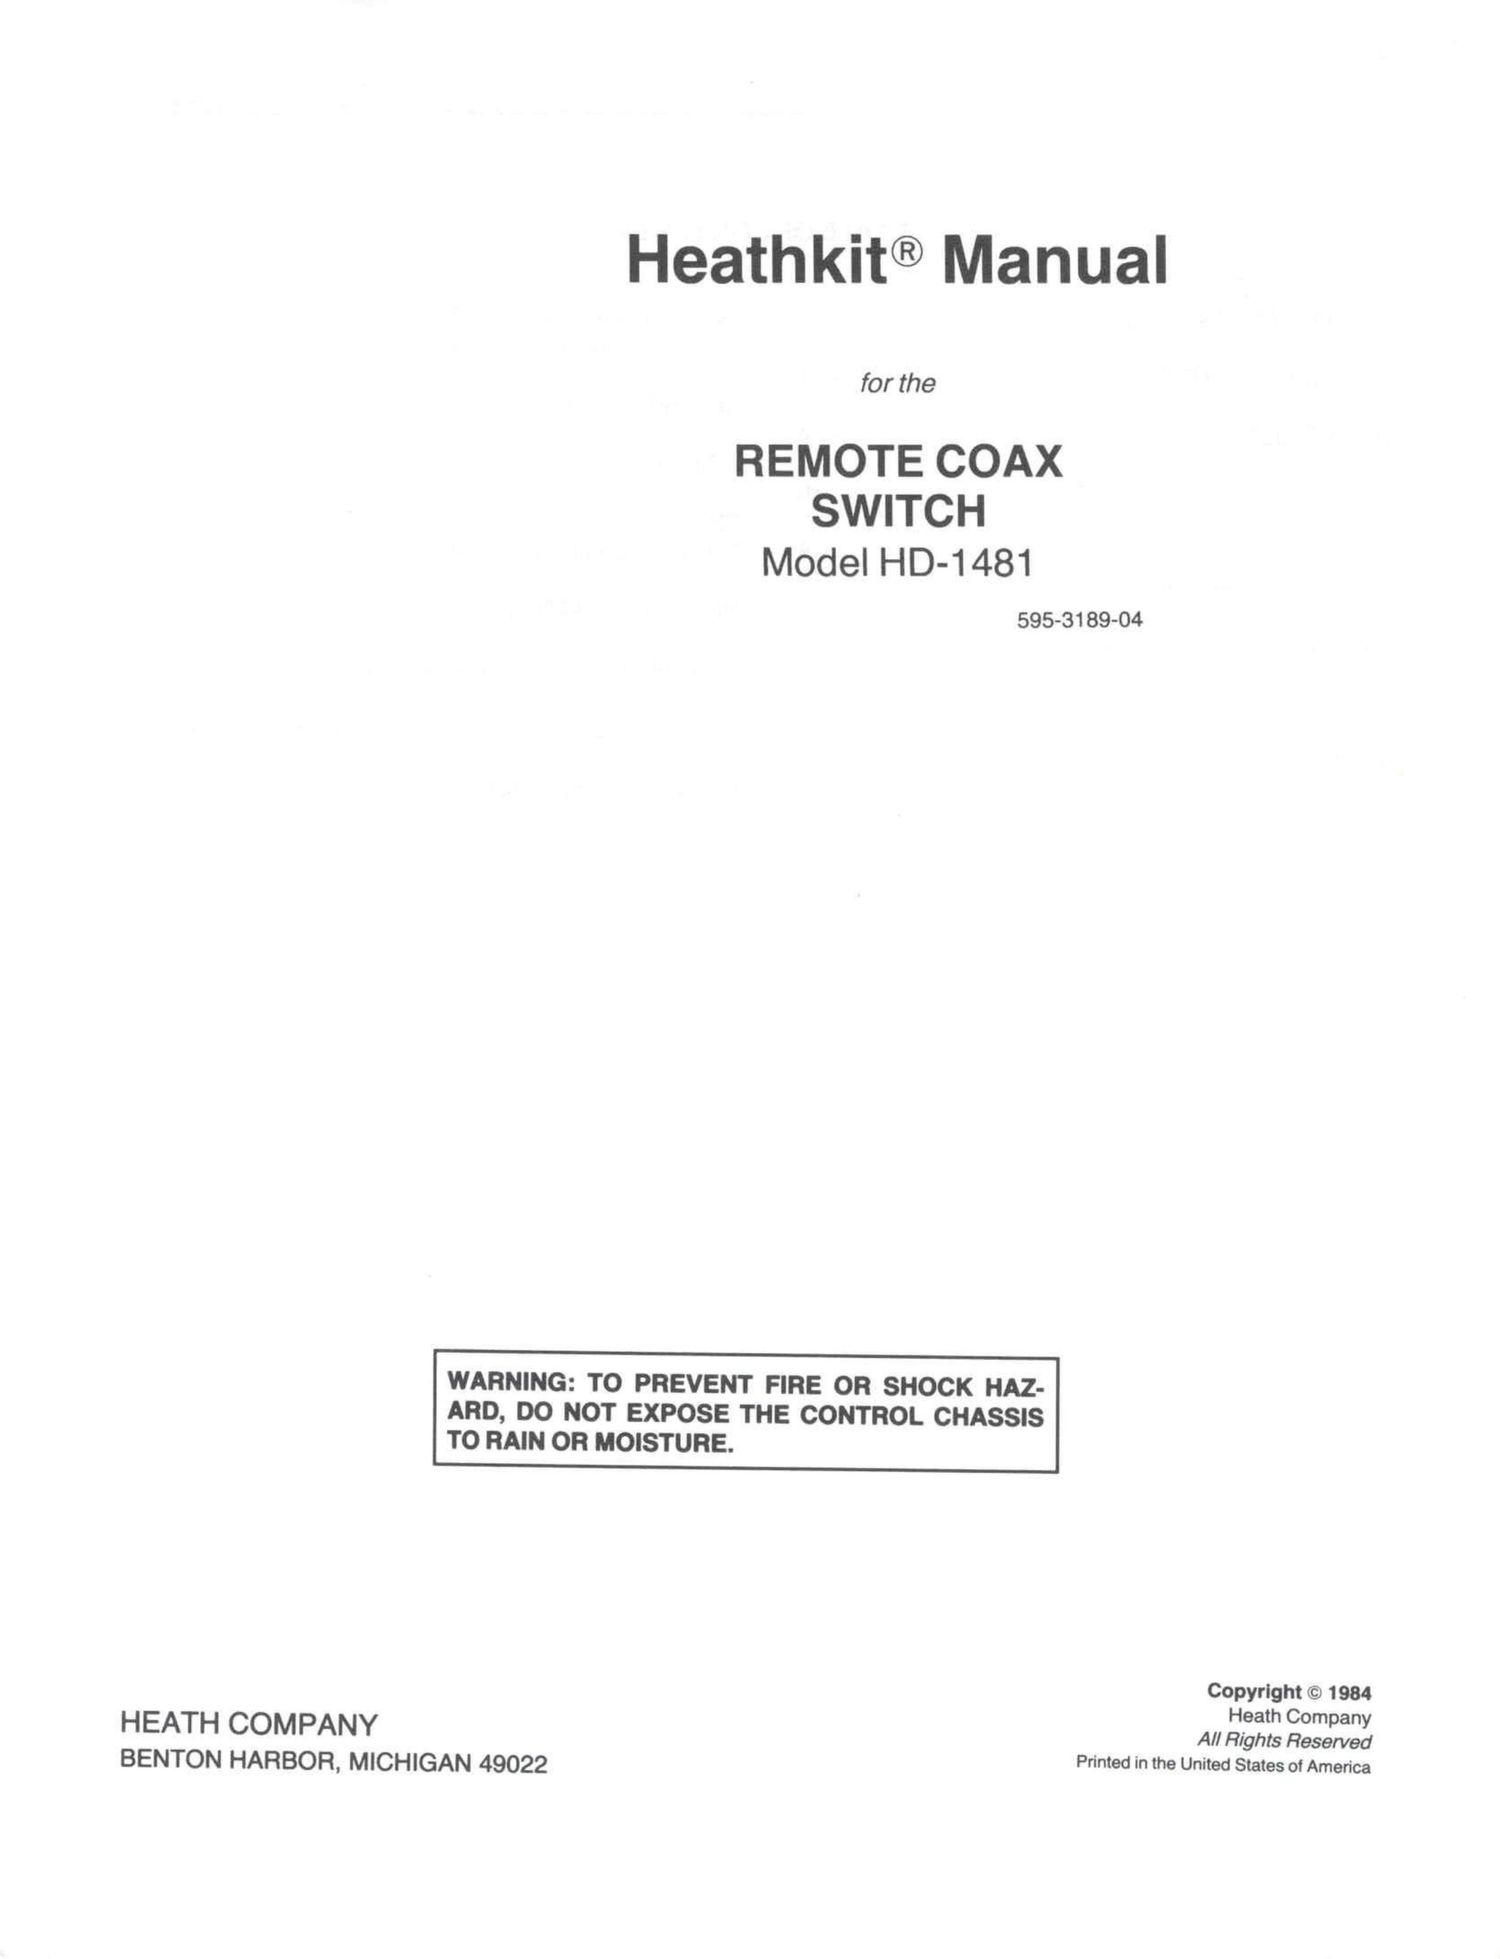 Heathkit HD 1481 Manual